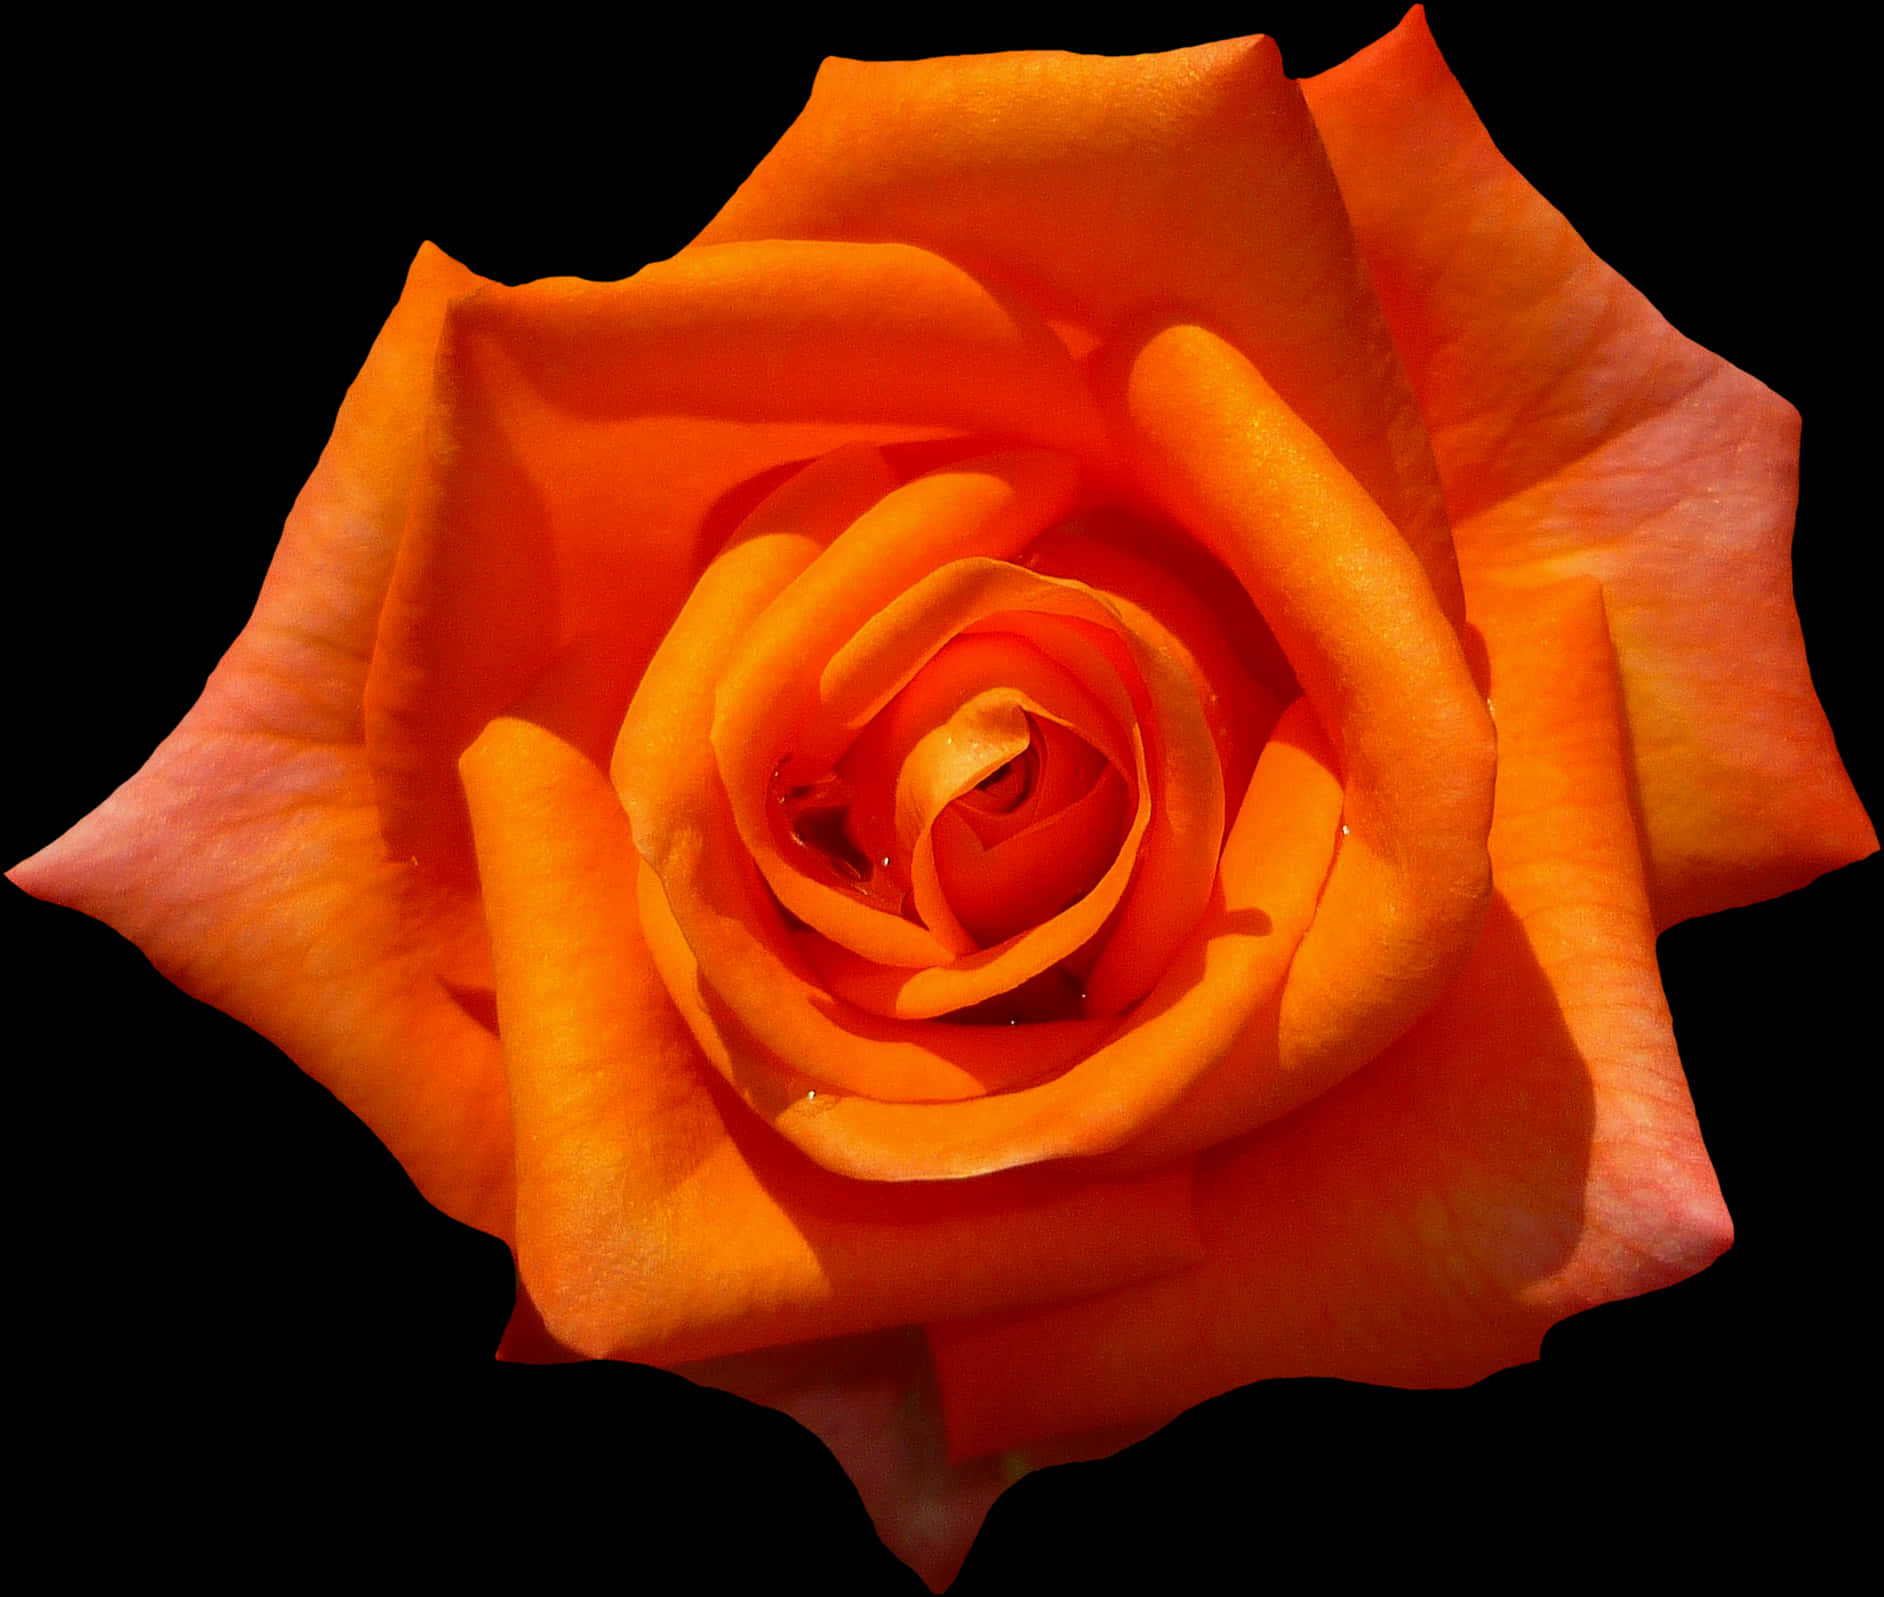 Rose, Orange, Blossom, Bloom, Flower, Orange Roses - Botanical Name Of Rose Flower, Hd Png Download PNG